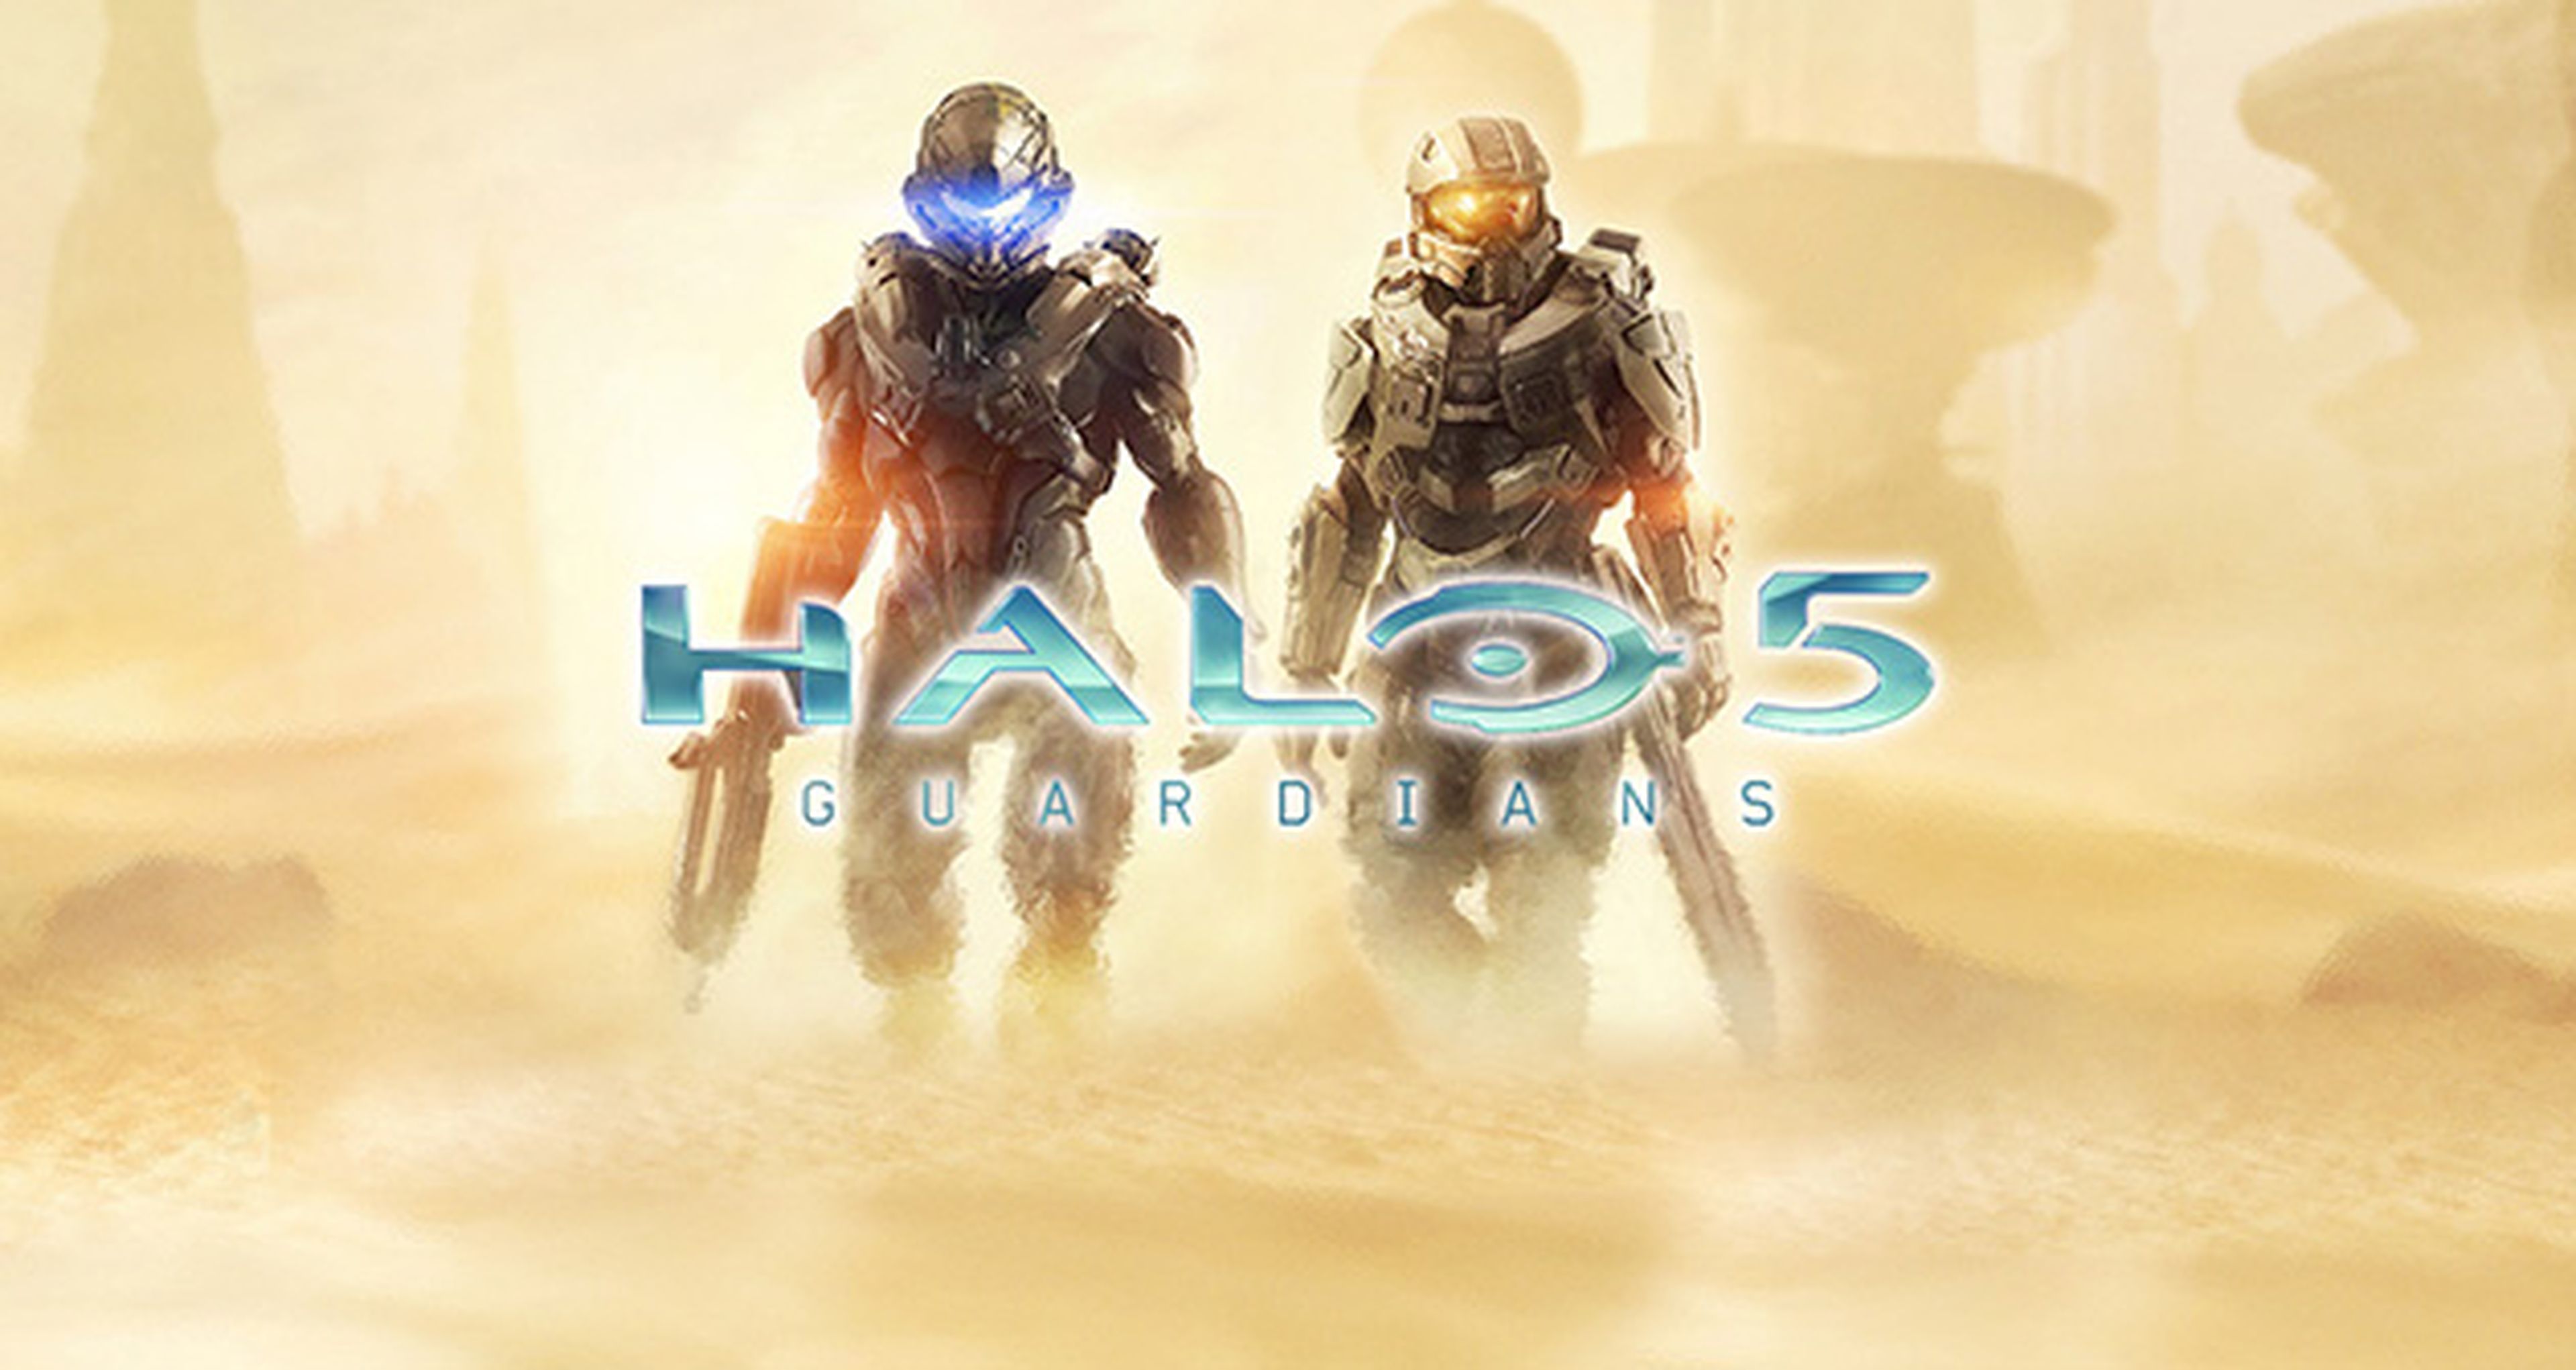 Halo 5 Guardians, más detalles sobre sus nuevos mapas multijugador